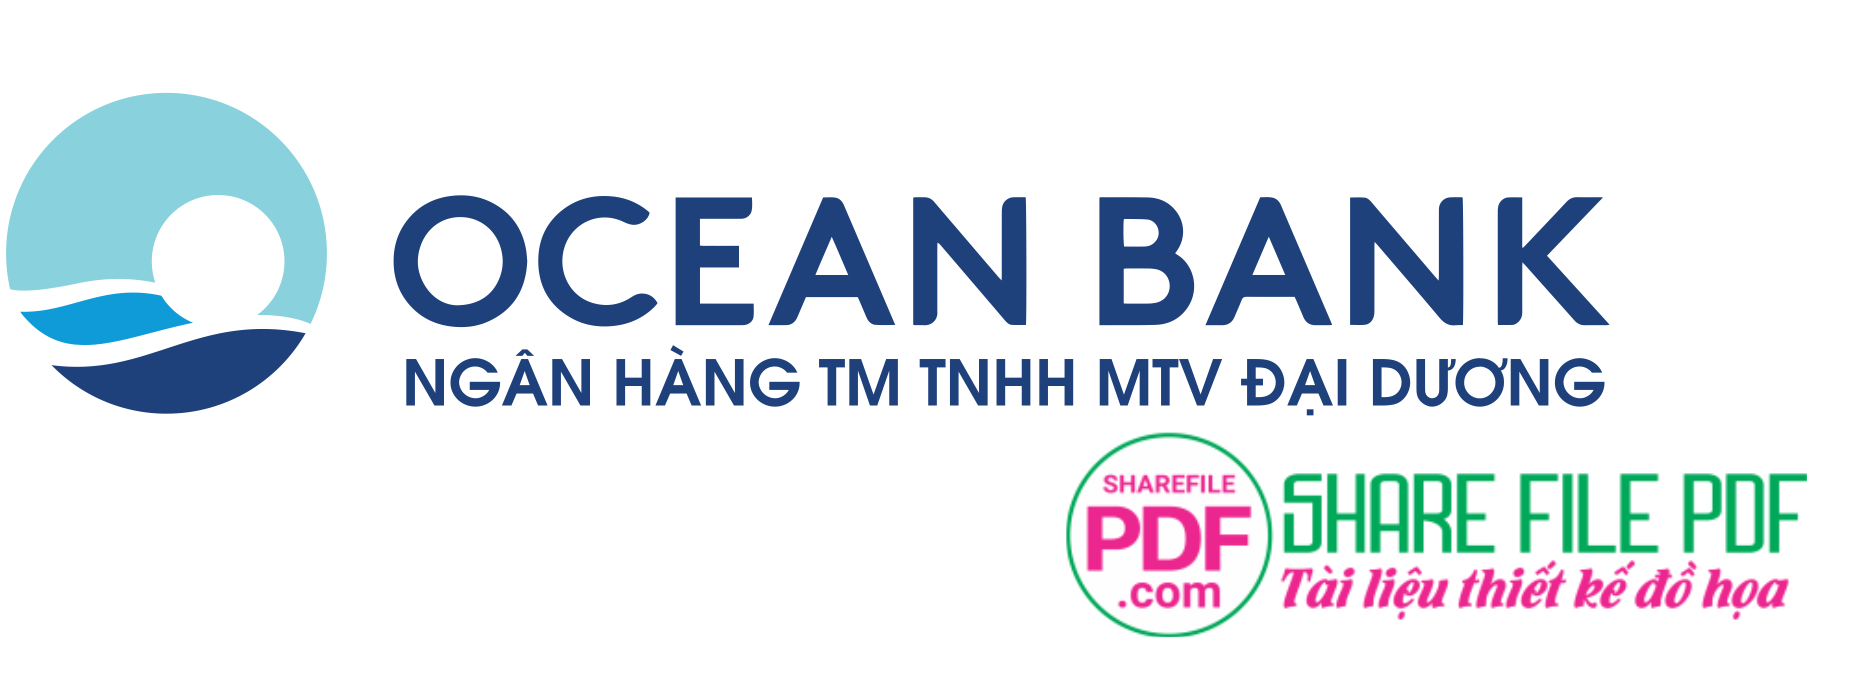 Logo ngân hàng Đại Dương Ocean Bank